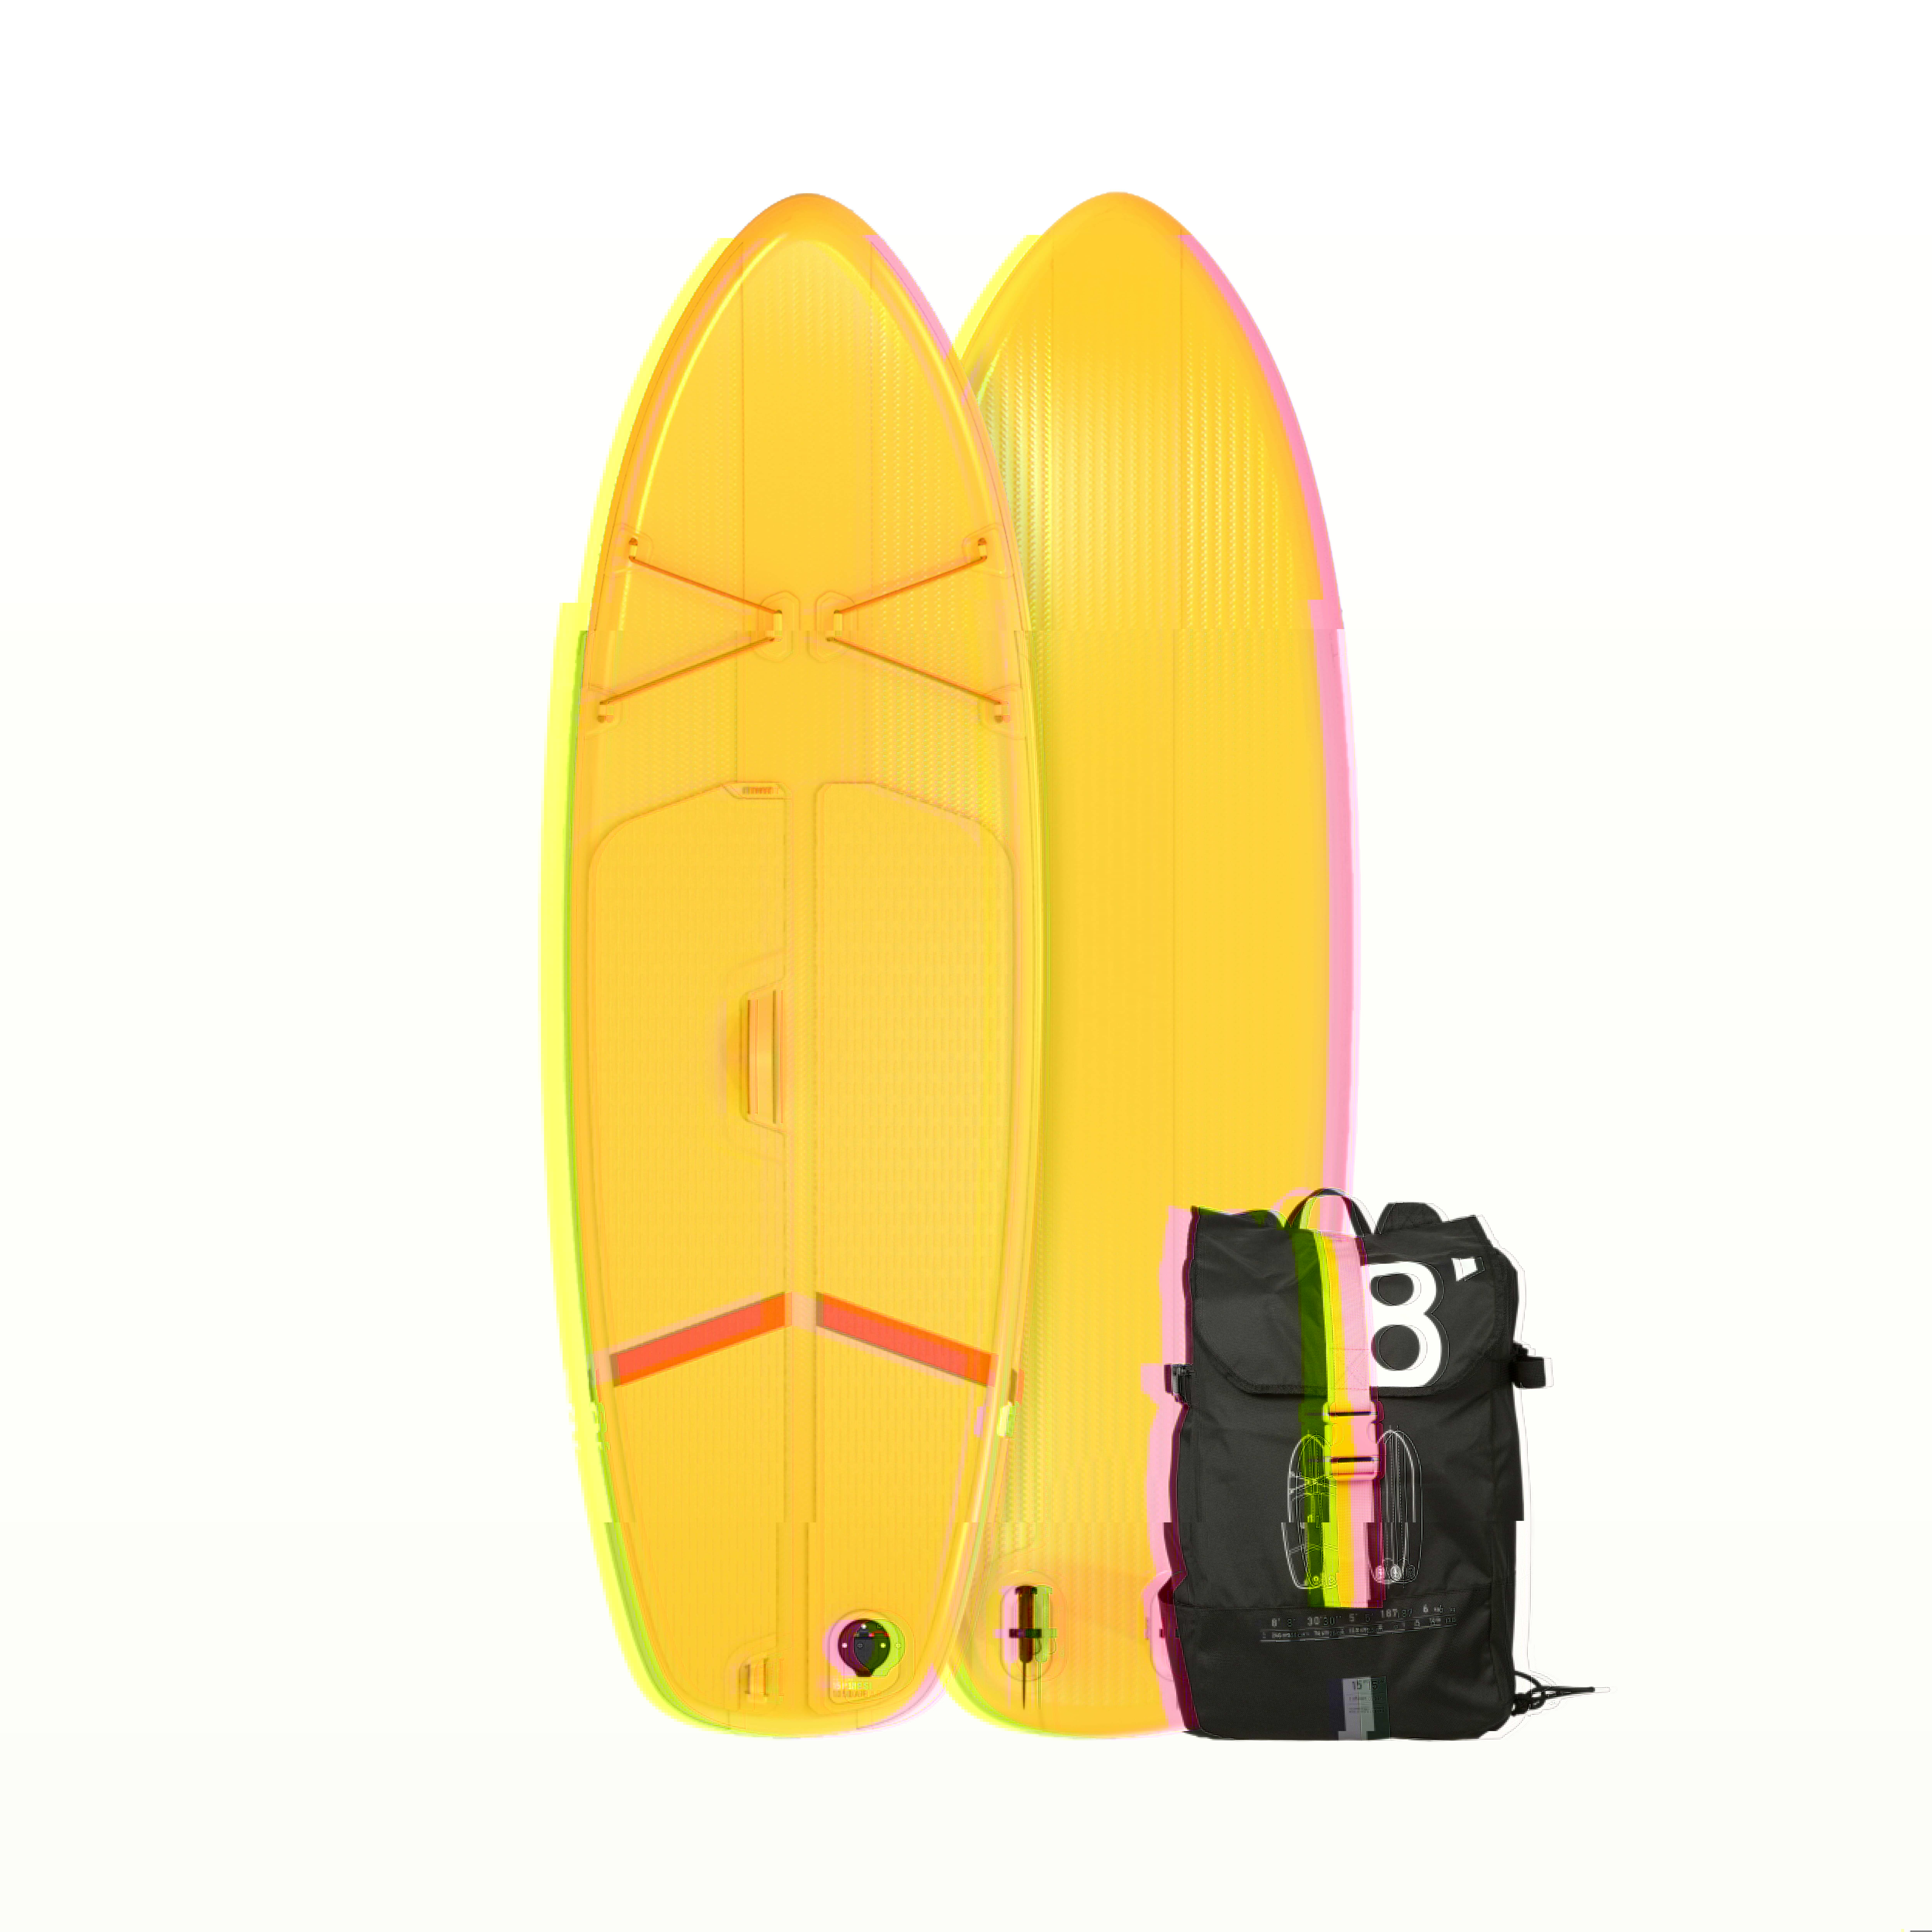 ITIWIT SUP-Board Stand Up Paddle aufblasbar Compact Gr. S Einsteiger weiss/gelb